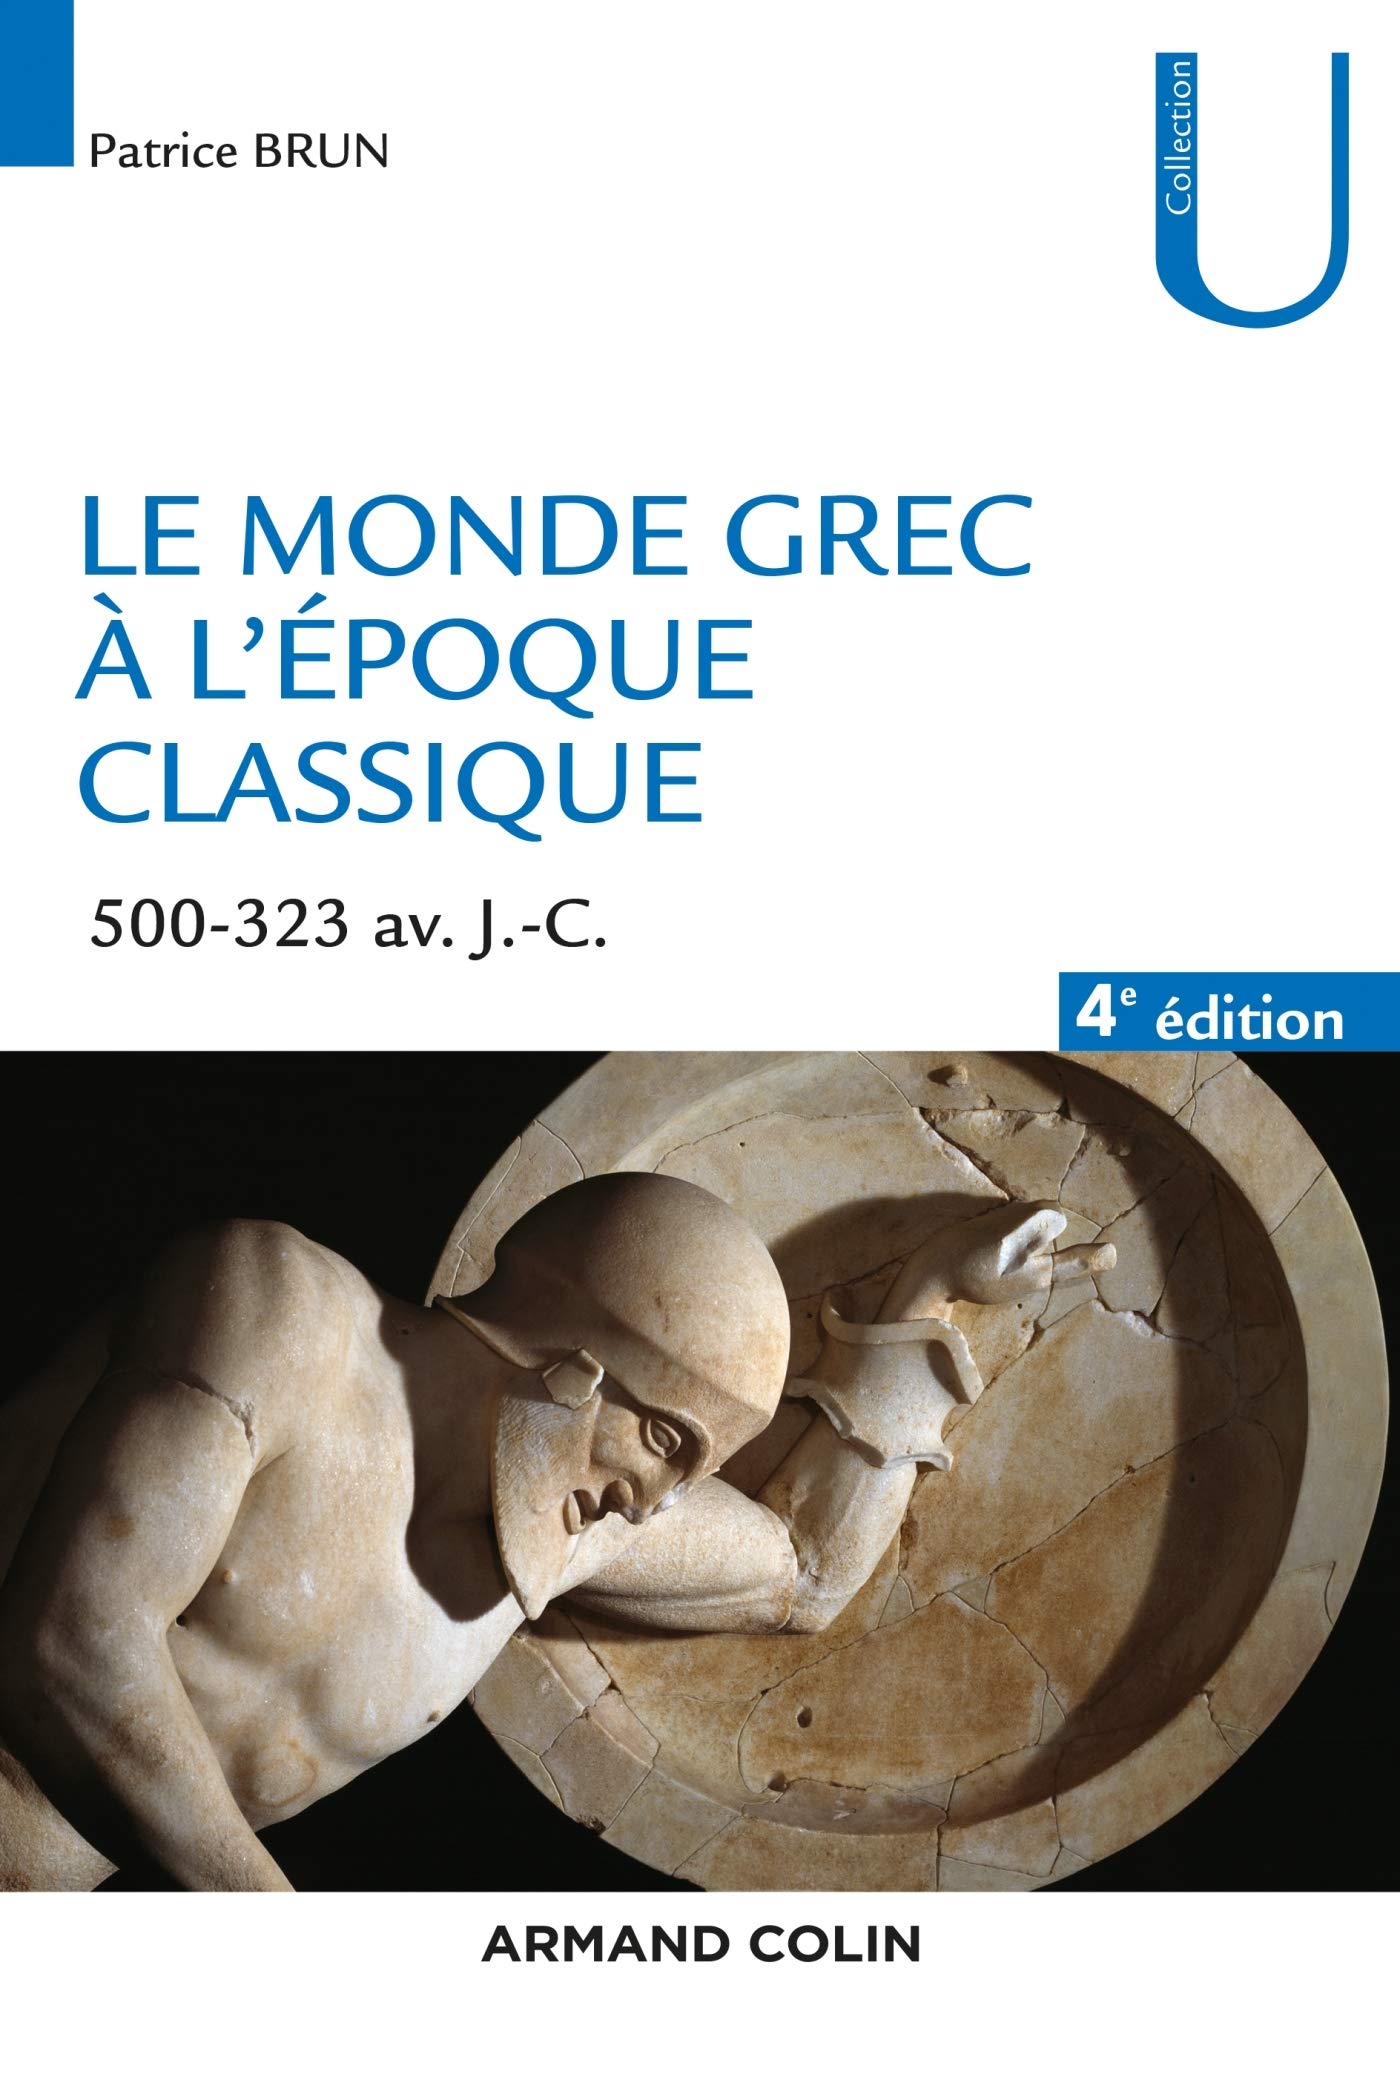 Le monde grec à l'époque classique, 500-323 avant J.-C., 2020, 4e éd., 296 p.